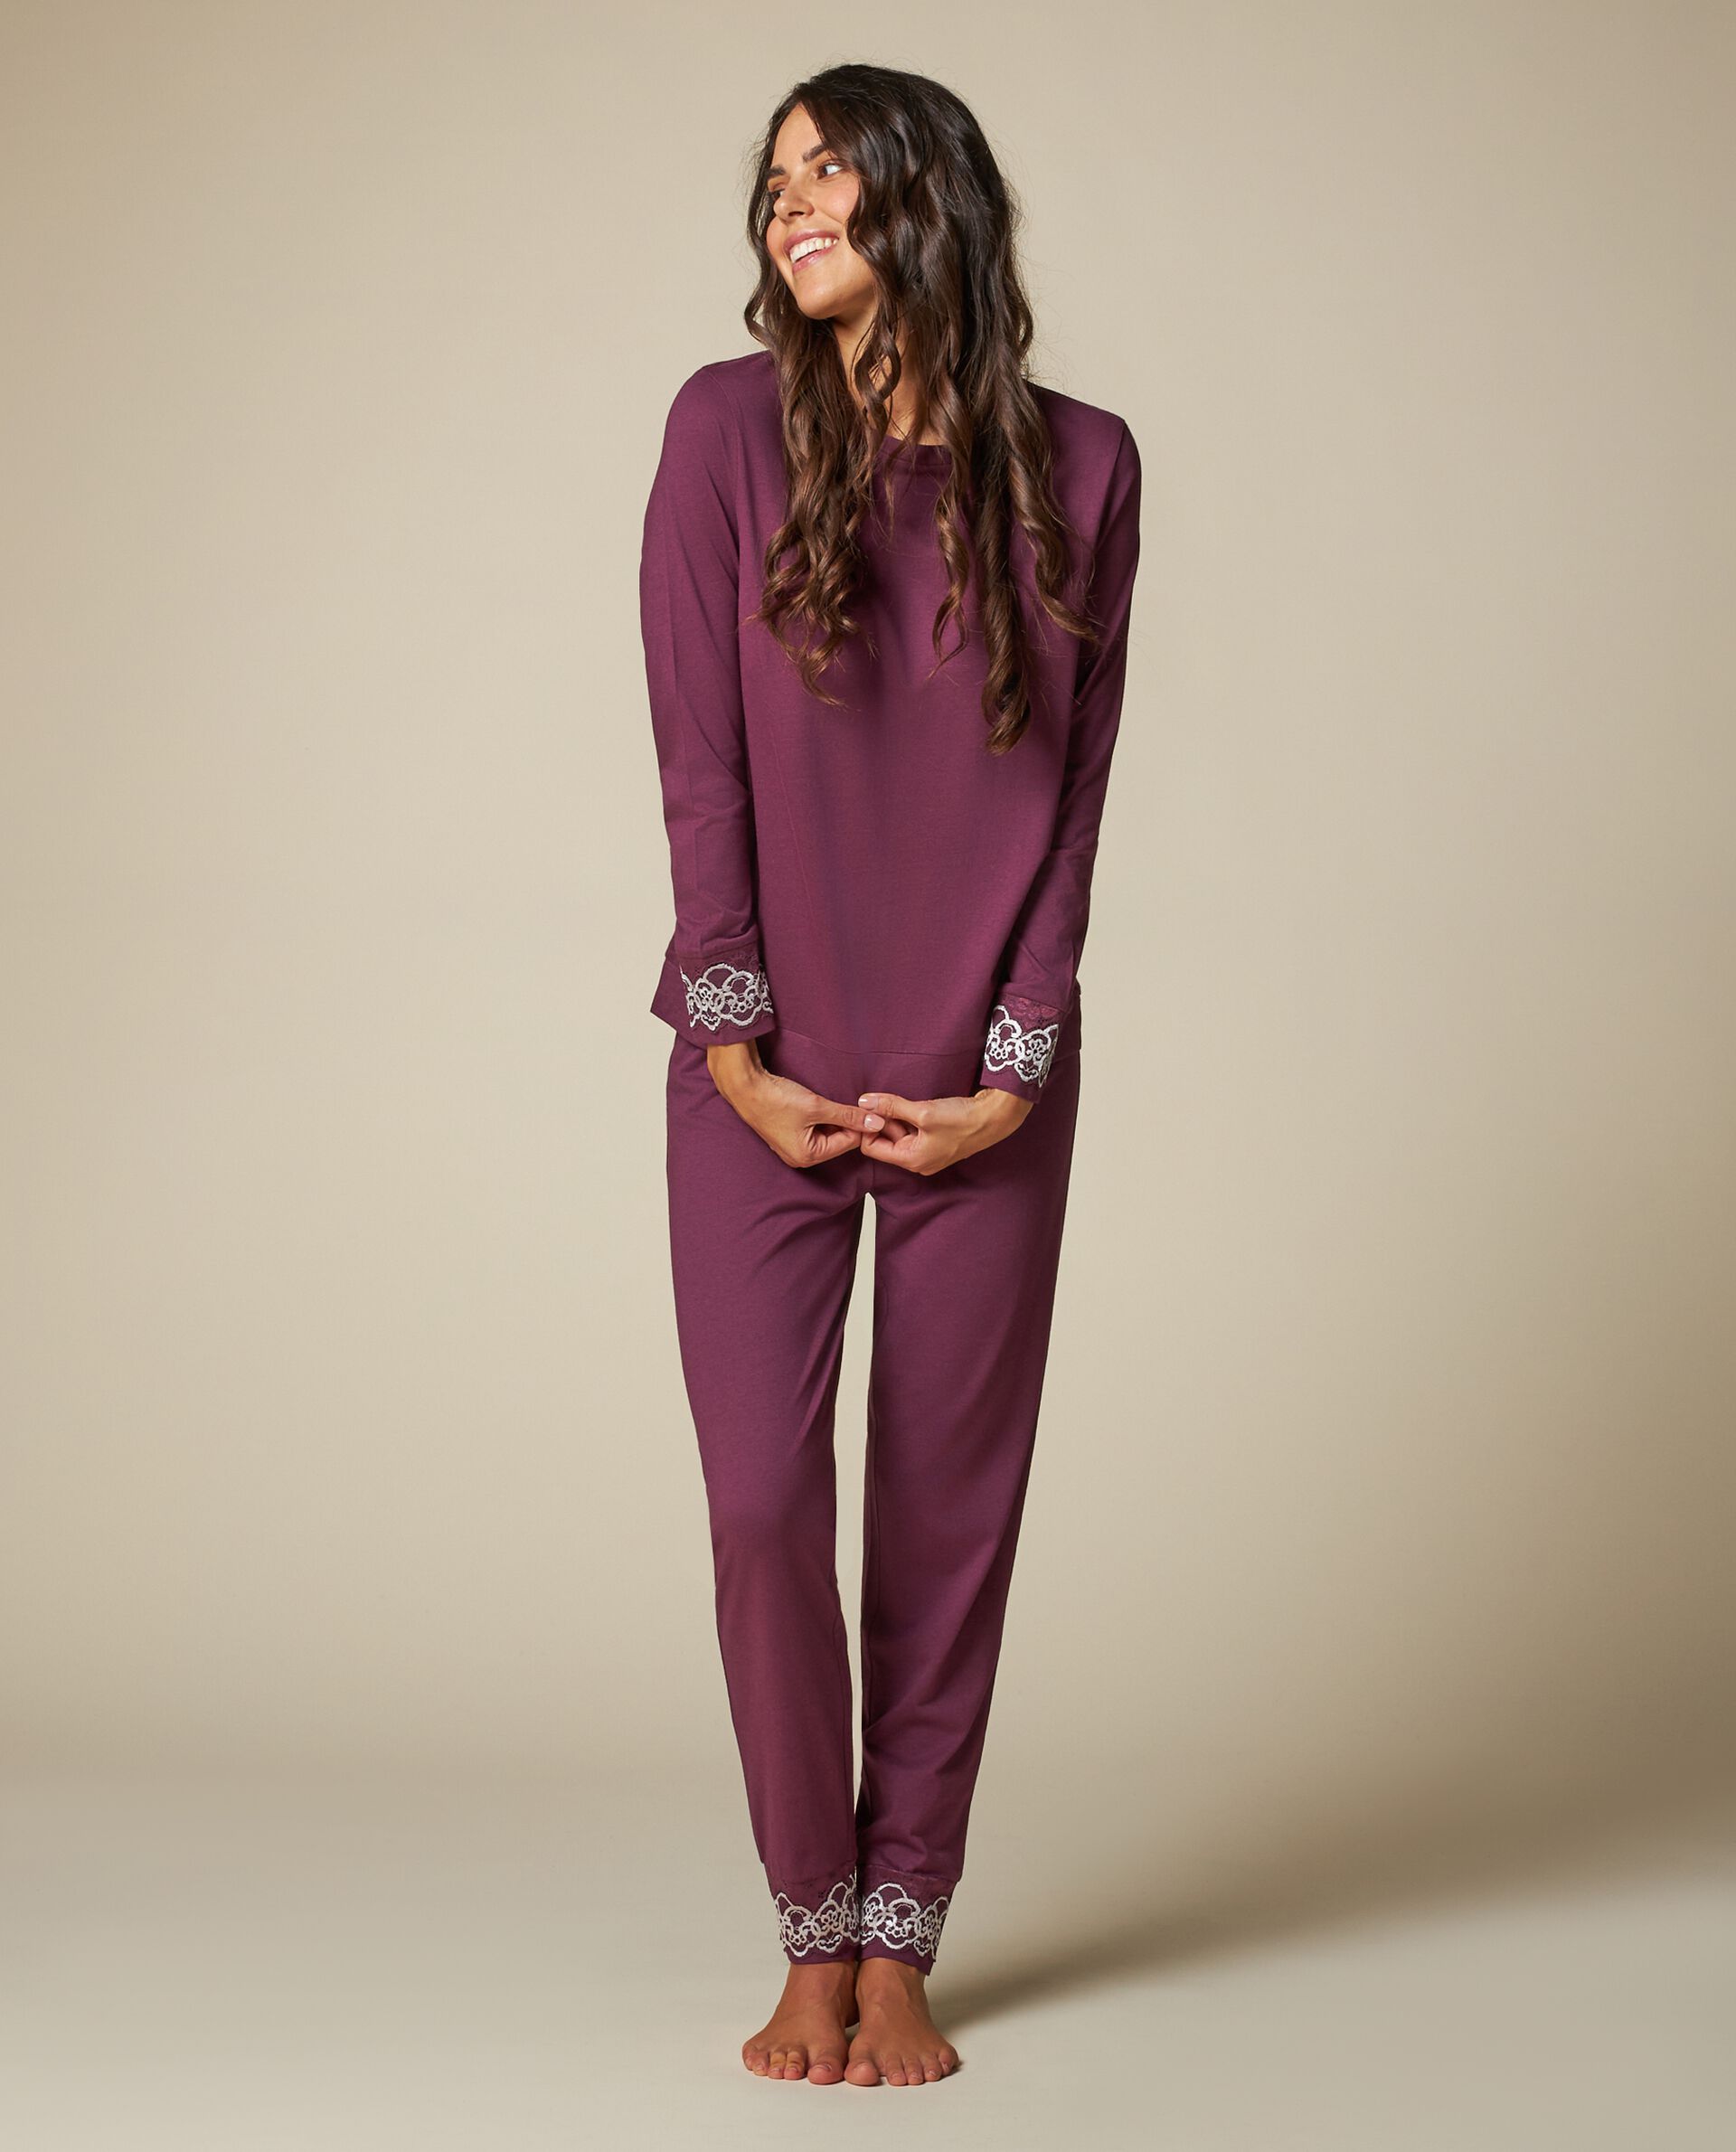 Женские пижамные брюки с вышитой кружевной вставкой Nymos, фиолетовый лиловый